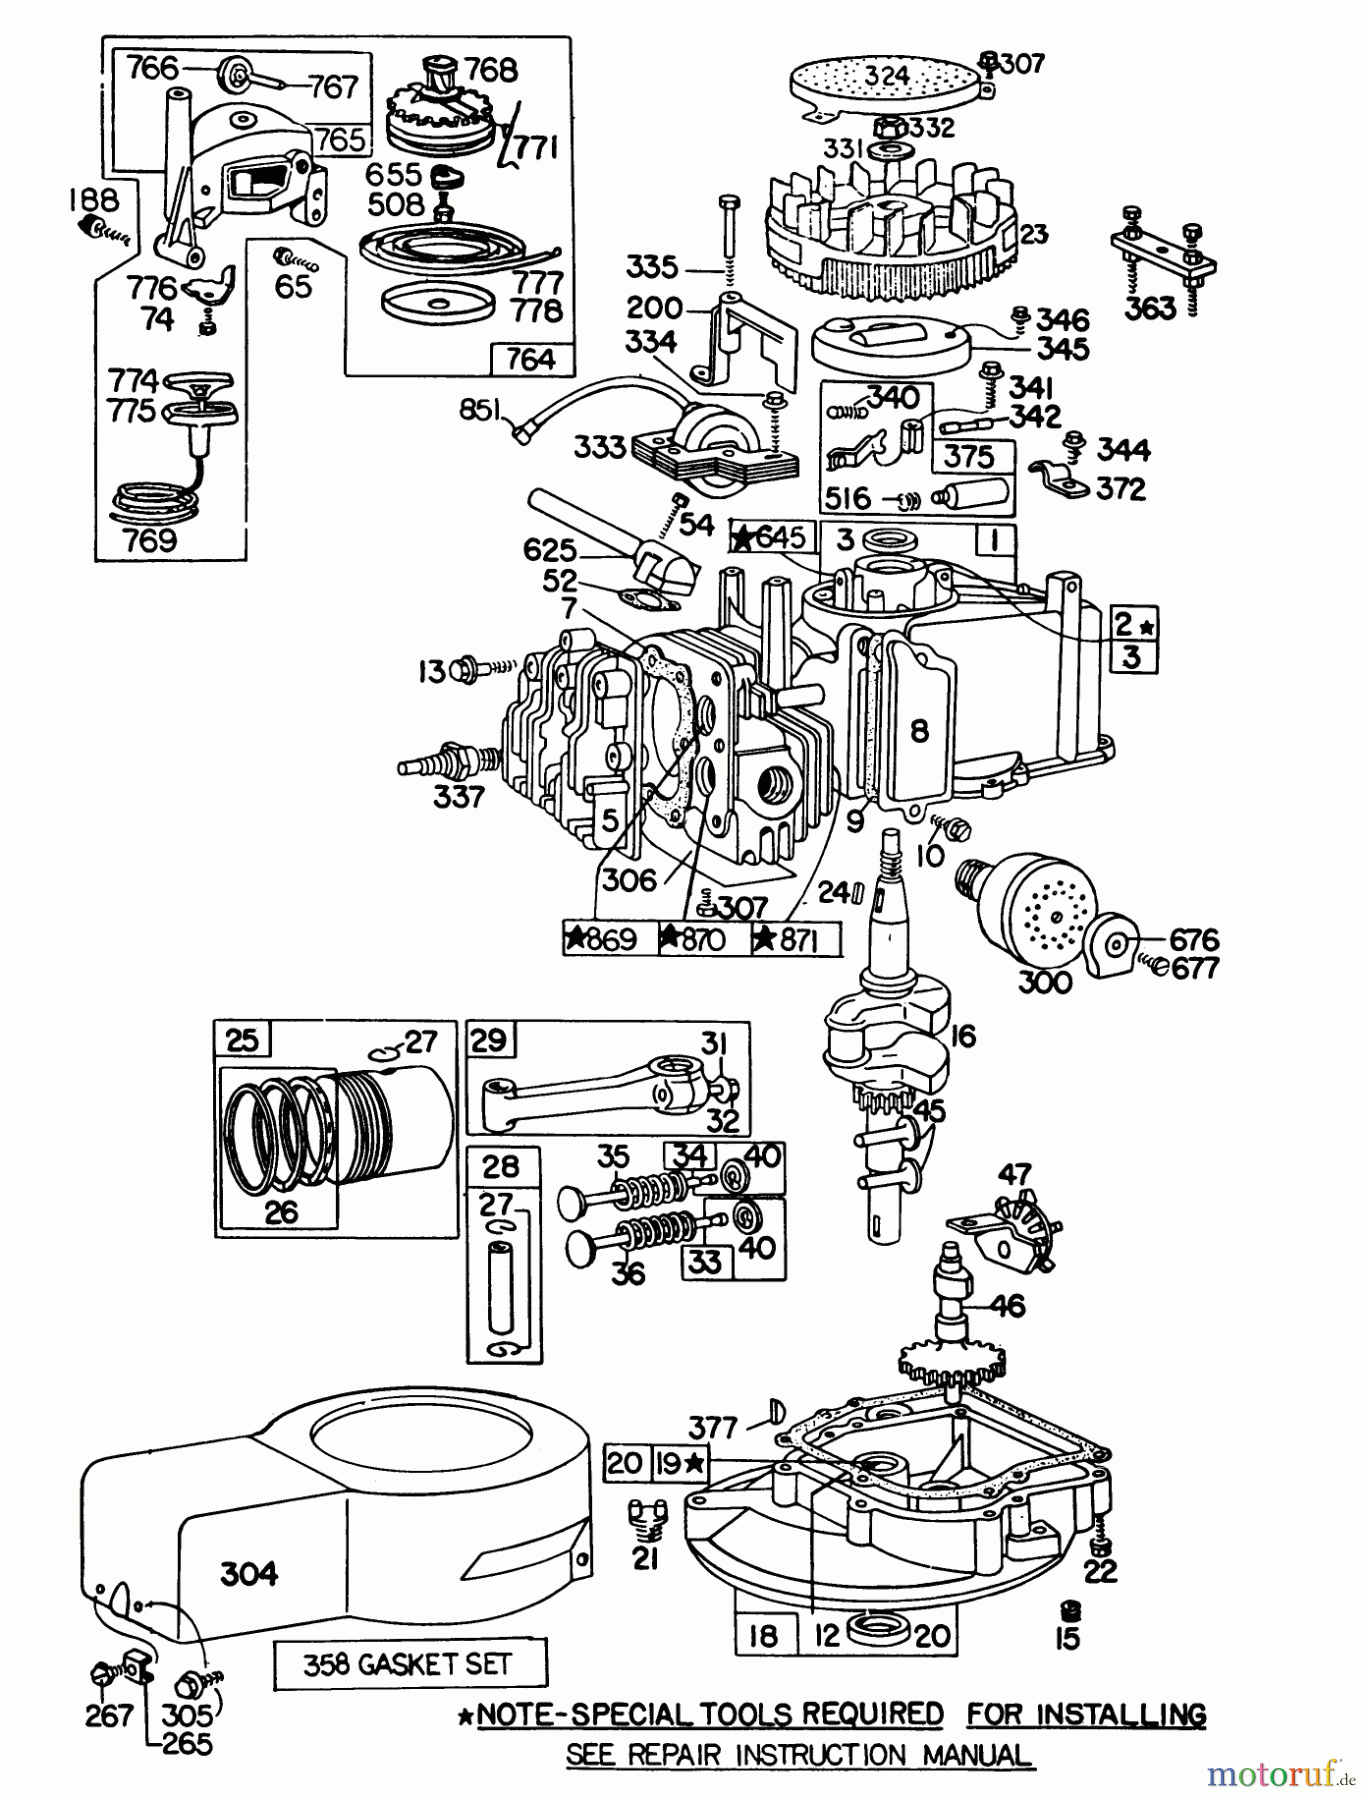  Toro Neu Mowers, Walk-Behind Seite 1 16350 - Toro Lawnmower, 1980 (0000001-0999999) ENGINE BRIGGS & STRATTON MODEL 92508-1033-02